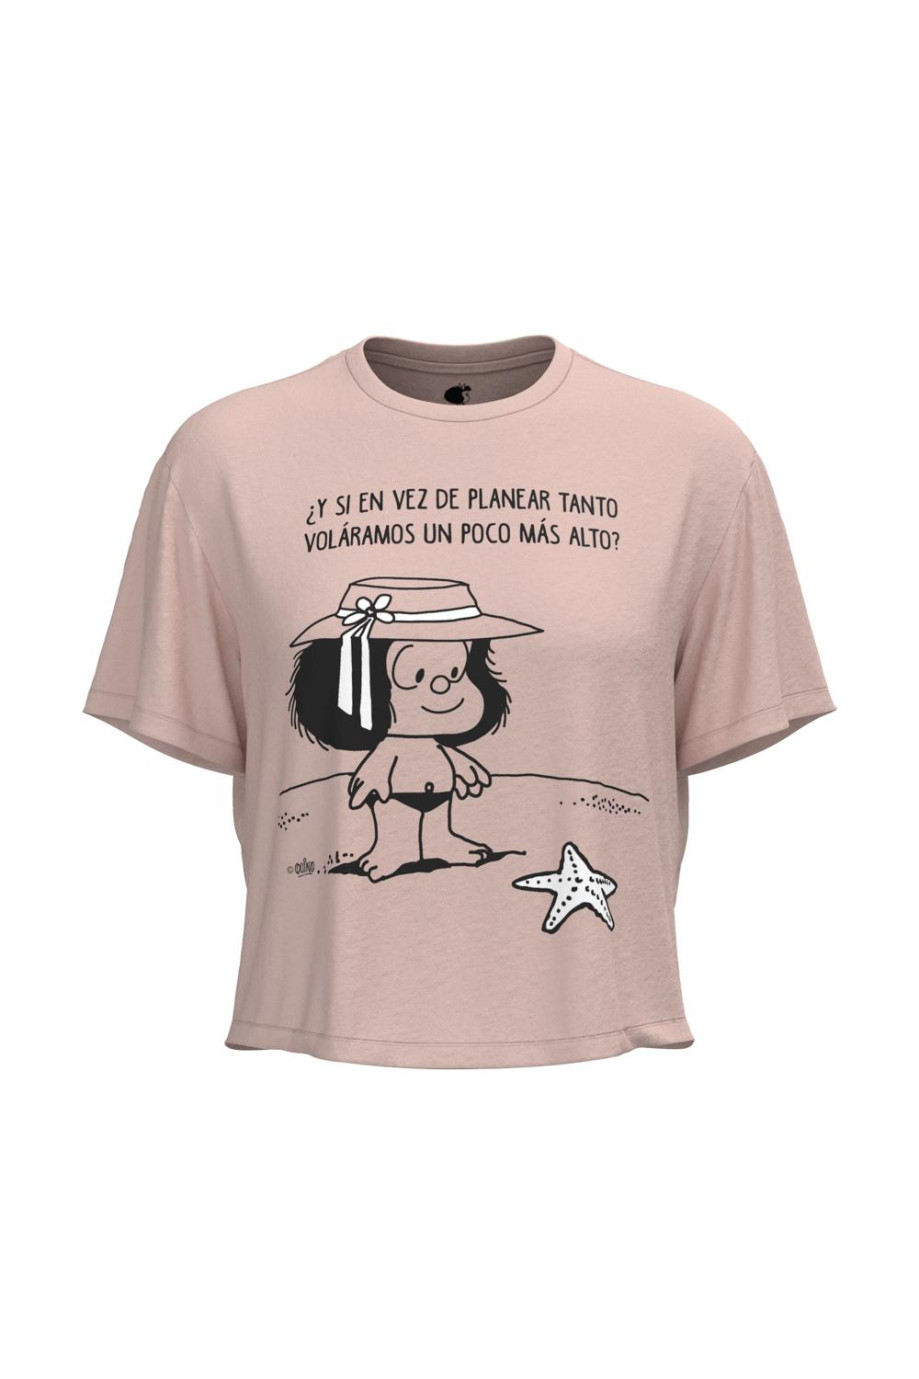 Camiseta unicolor crop top con diseño de Mafalda en frente